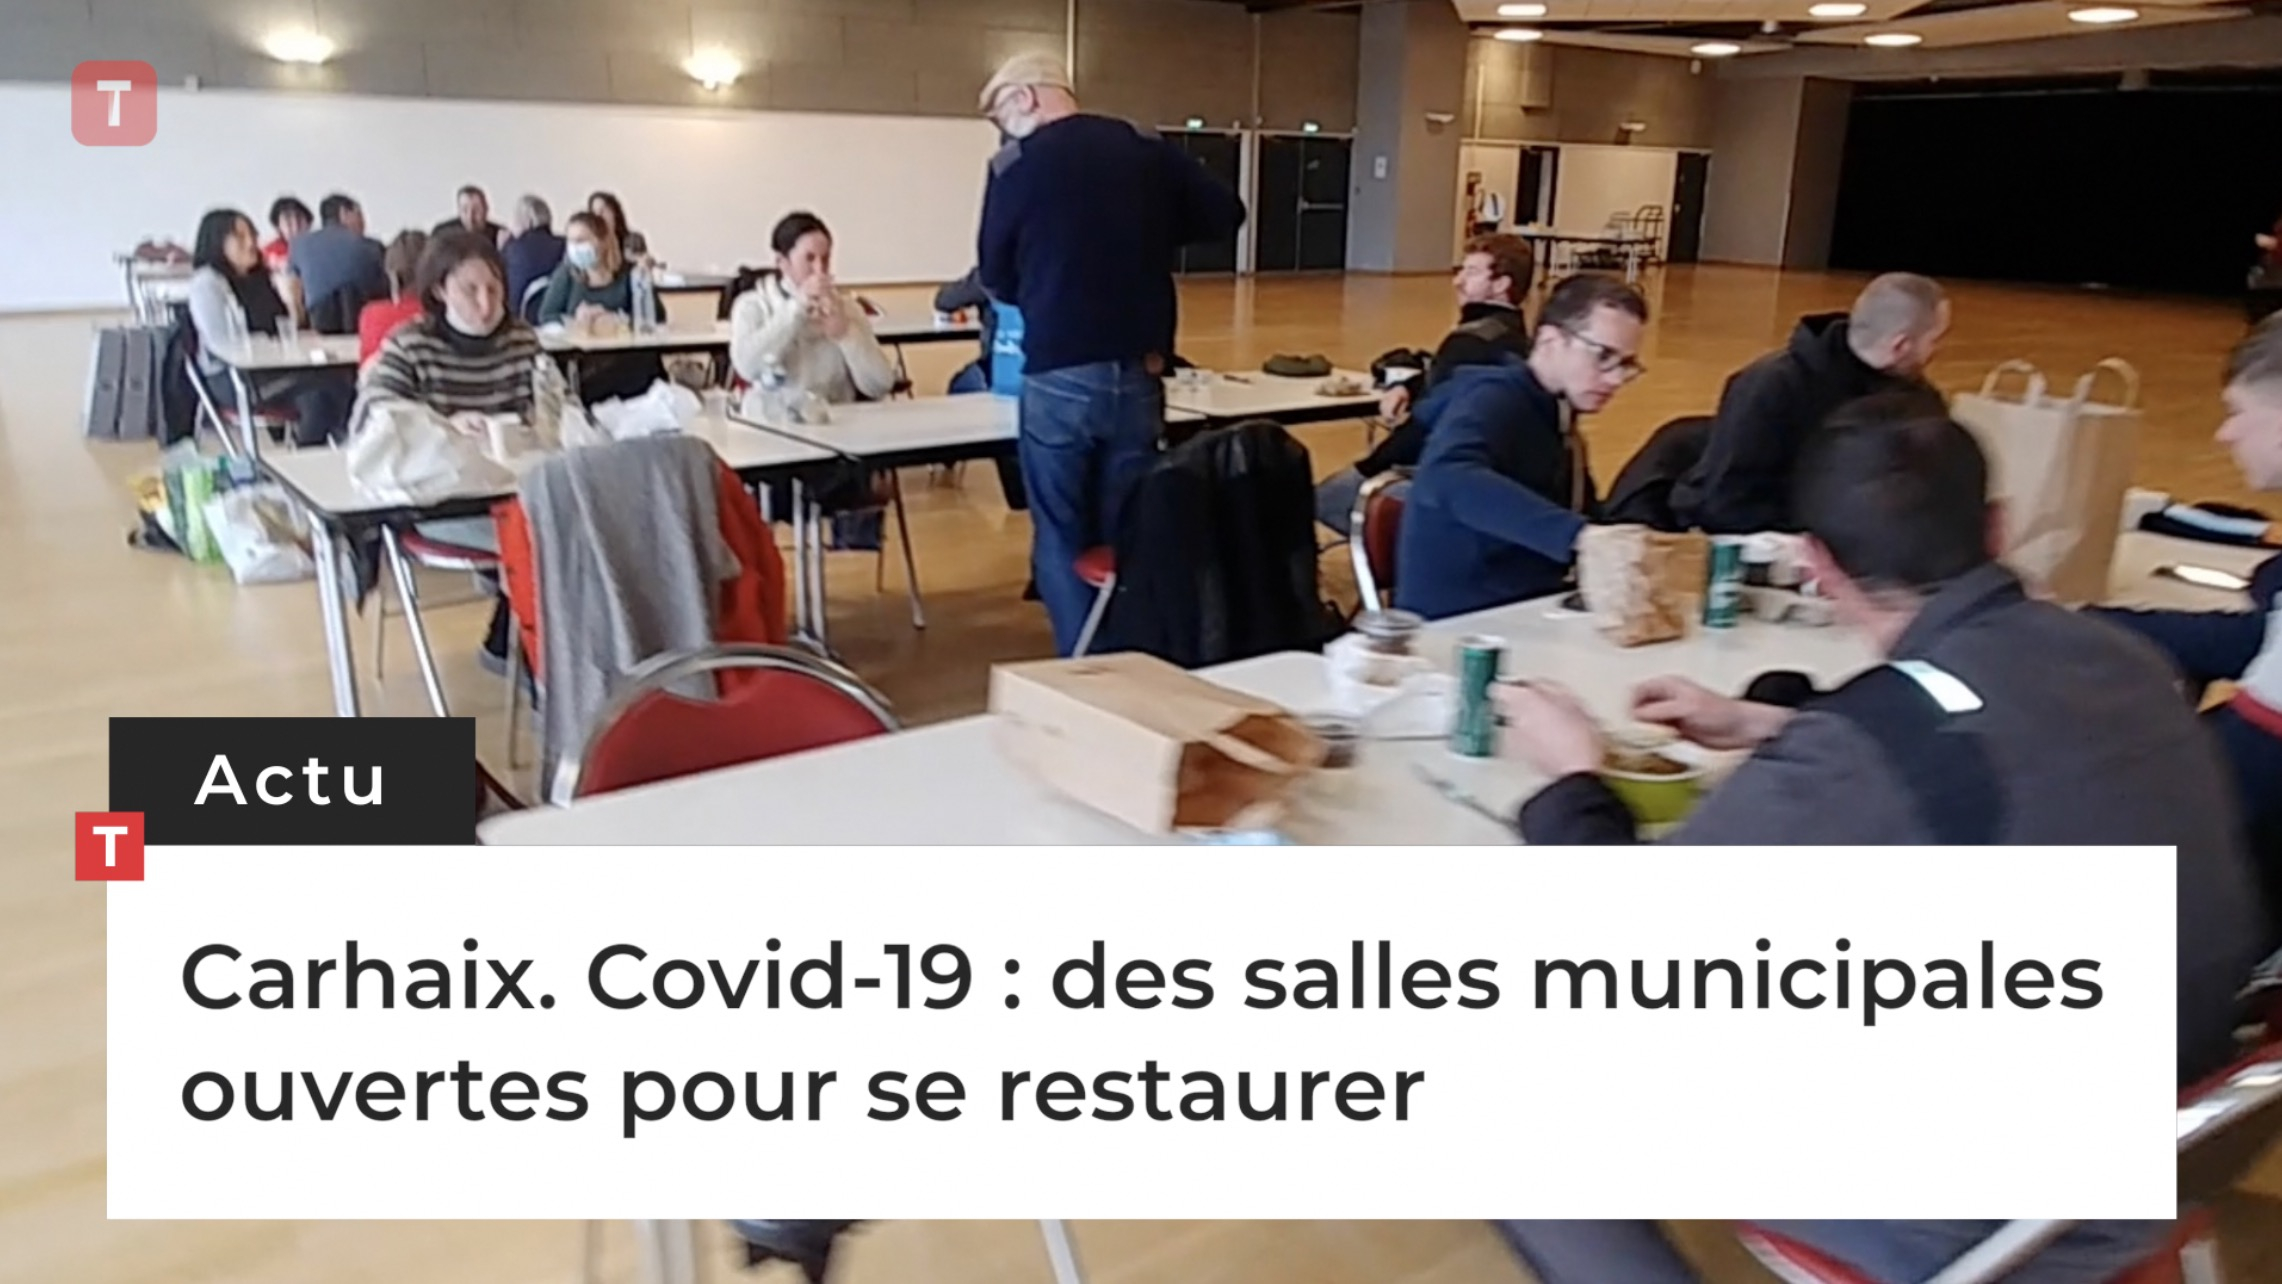 Carhaix. Covid-19 : des salles municipales ouvertes pour se restaurer (Le Télégramme)